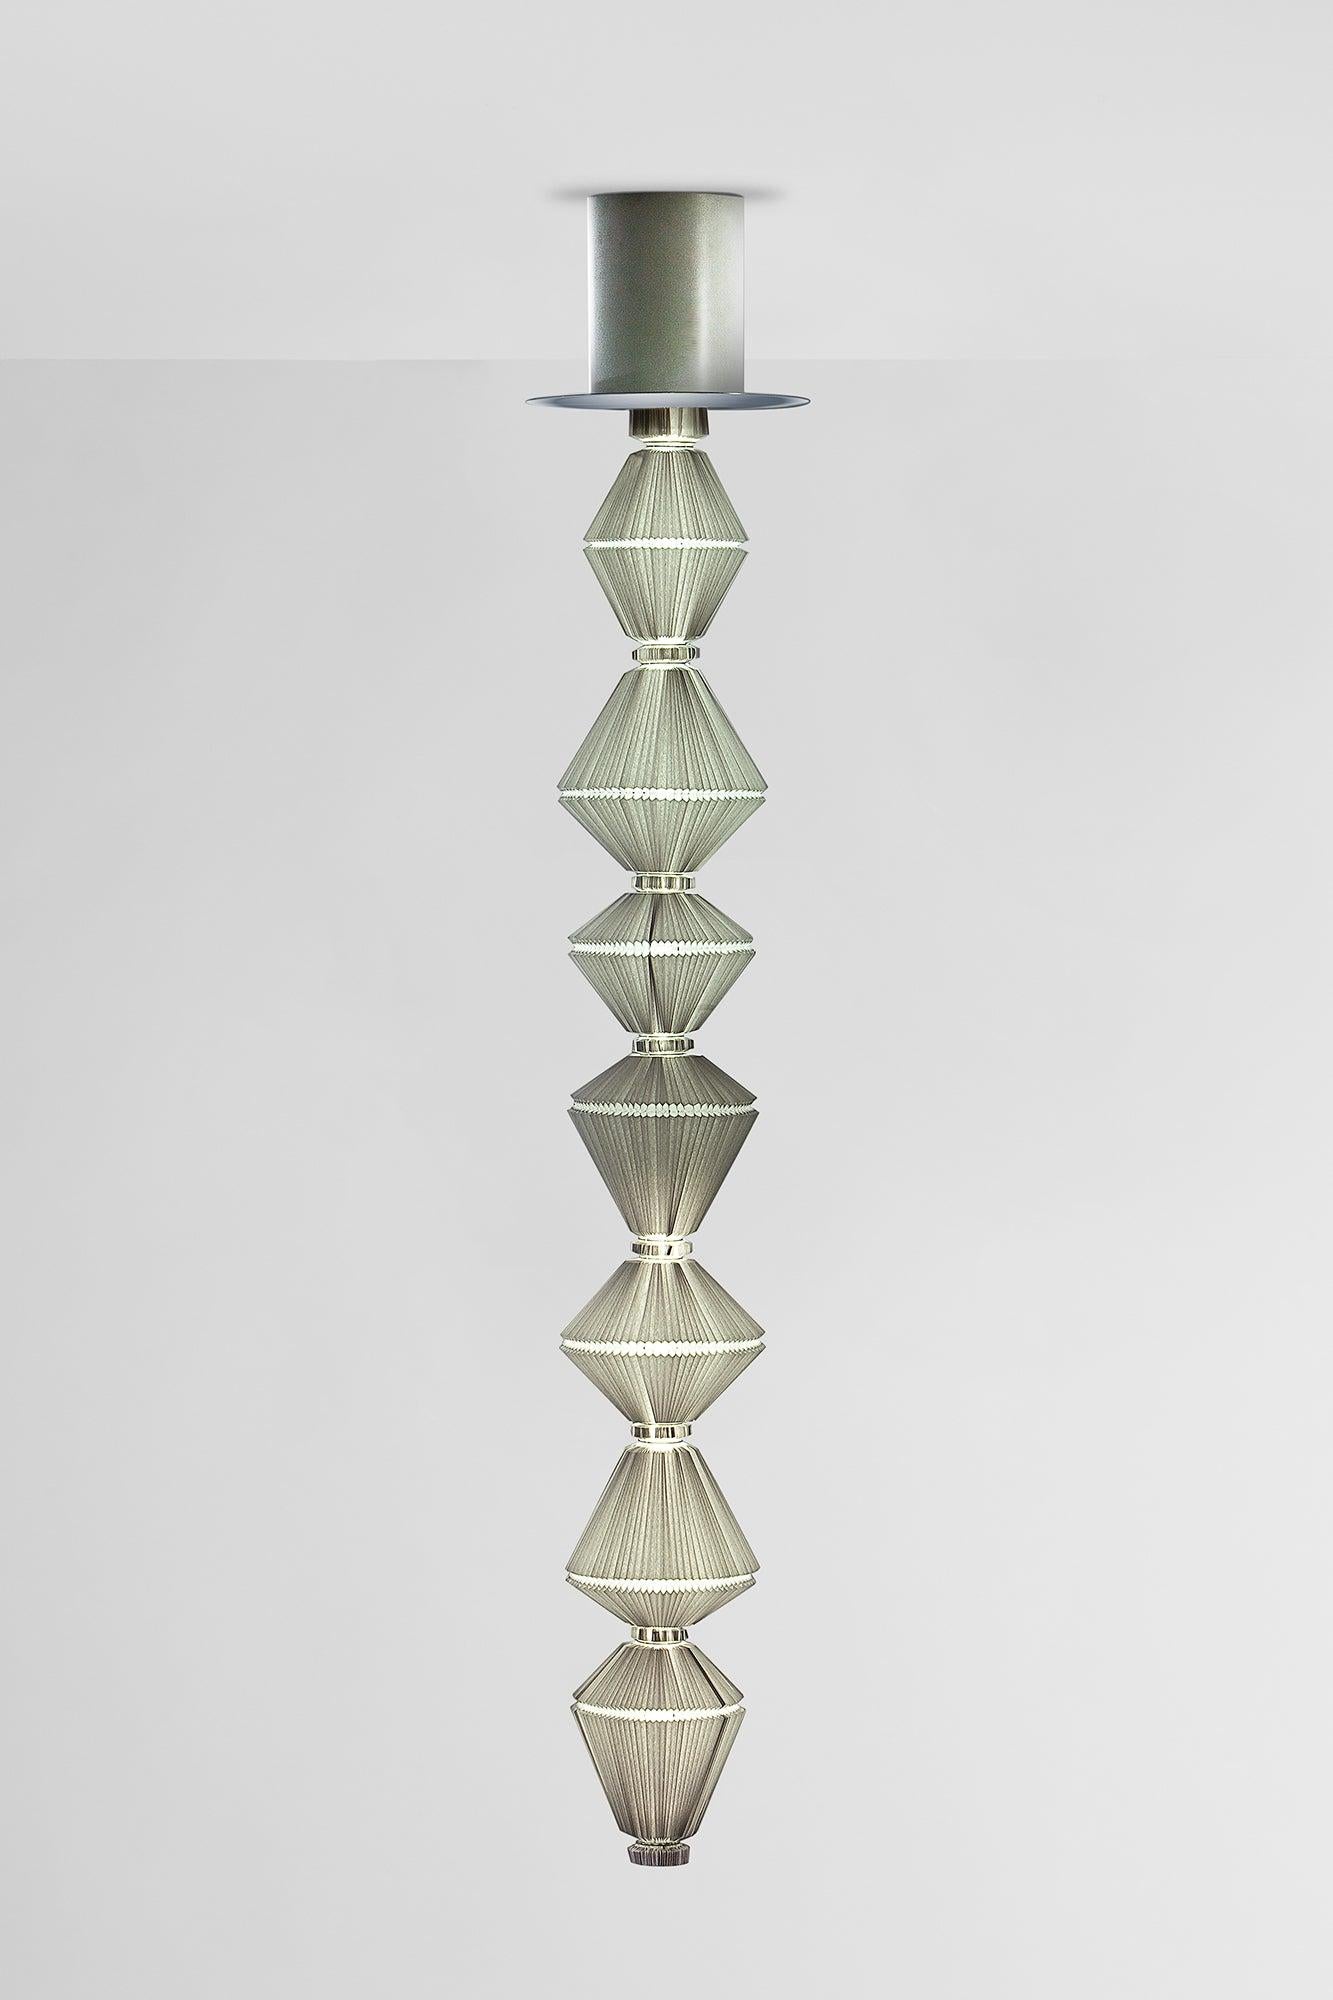 Oiphorique T GR Hängeleuchte, entworfen von Atelier Oi im Jahr 2014.
Hergestellt von Parachilna (Spanien)

Oïphorique zeigt einen eleganten Textildiffusor. Wenn man das Licht einschaltet, erwacht die Seele, und alles beginnt sich in einer